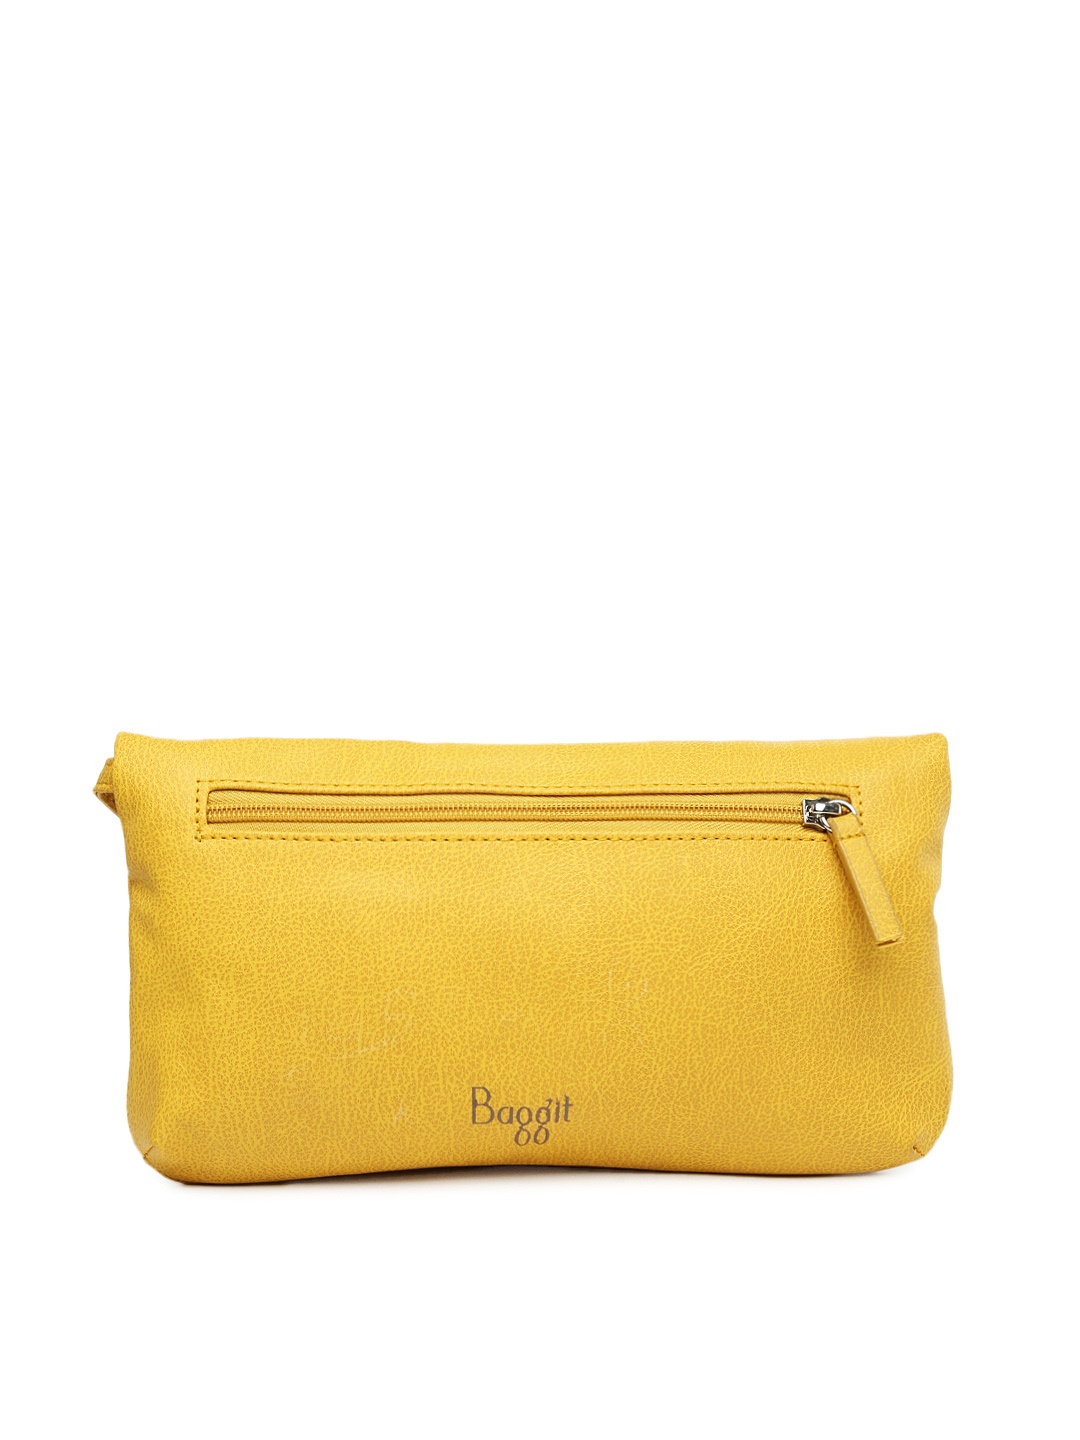 Myntra Baggit Yellow Sling Bag 700231 | Buy Myntra Baggit Handbags at best price online. All ...